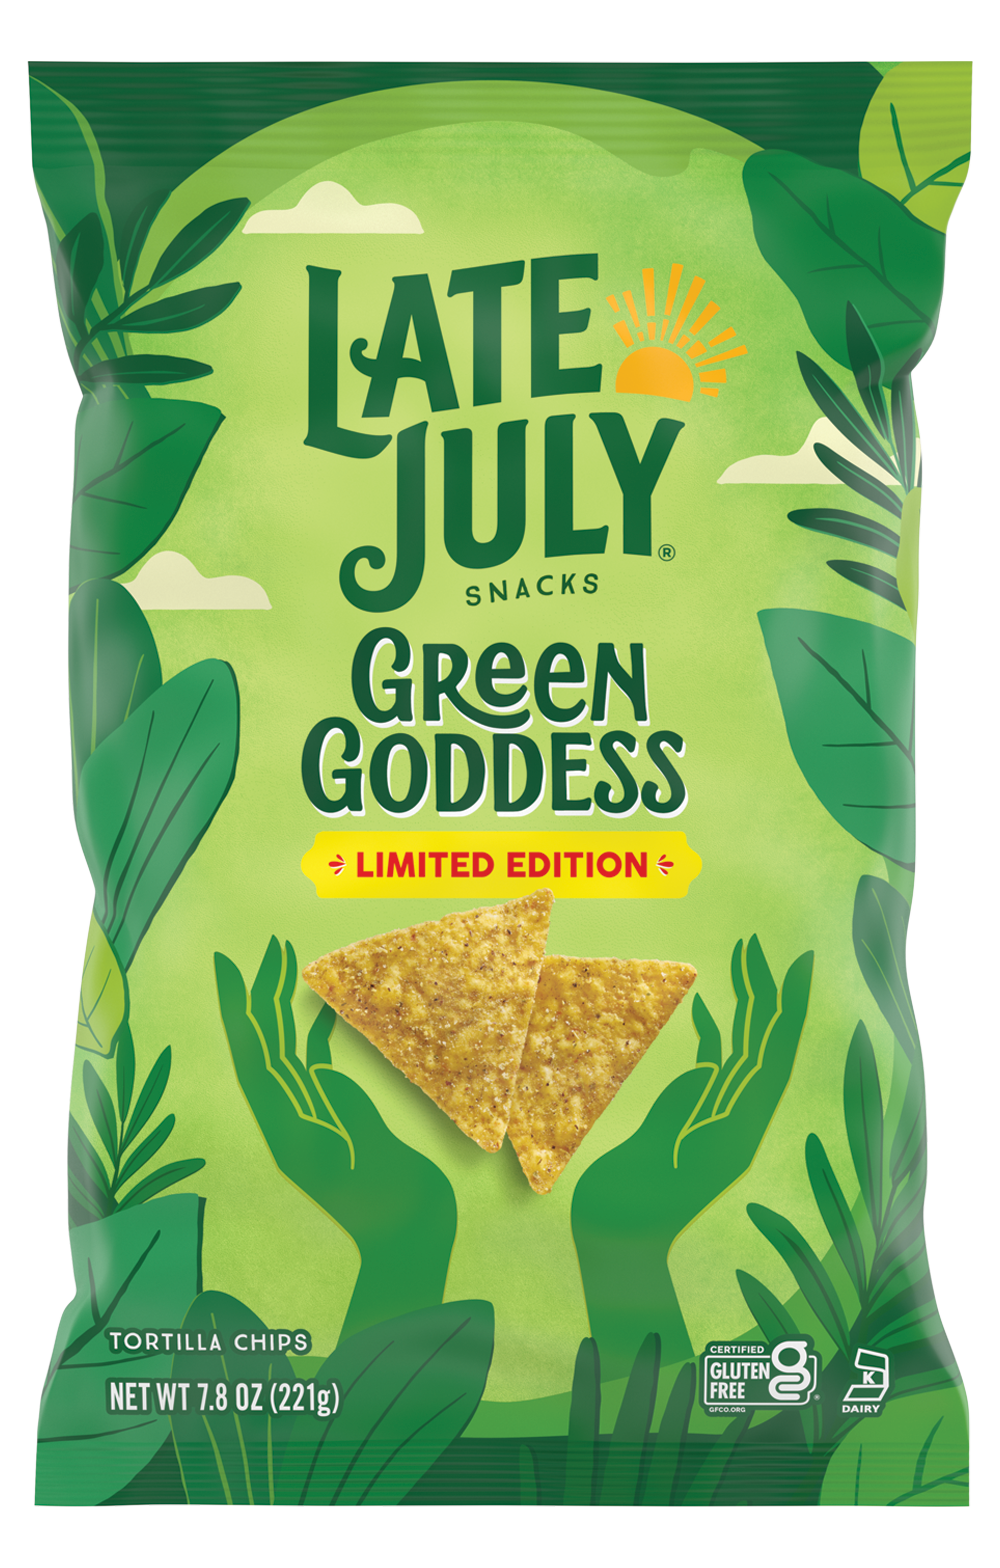 Green Goddess chip bag